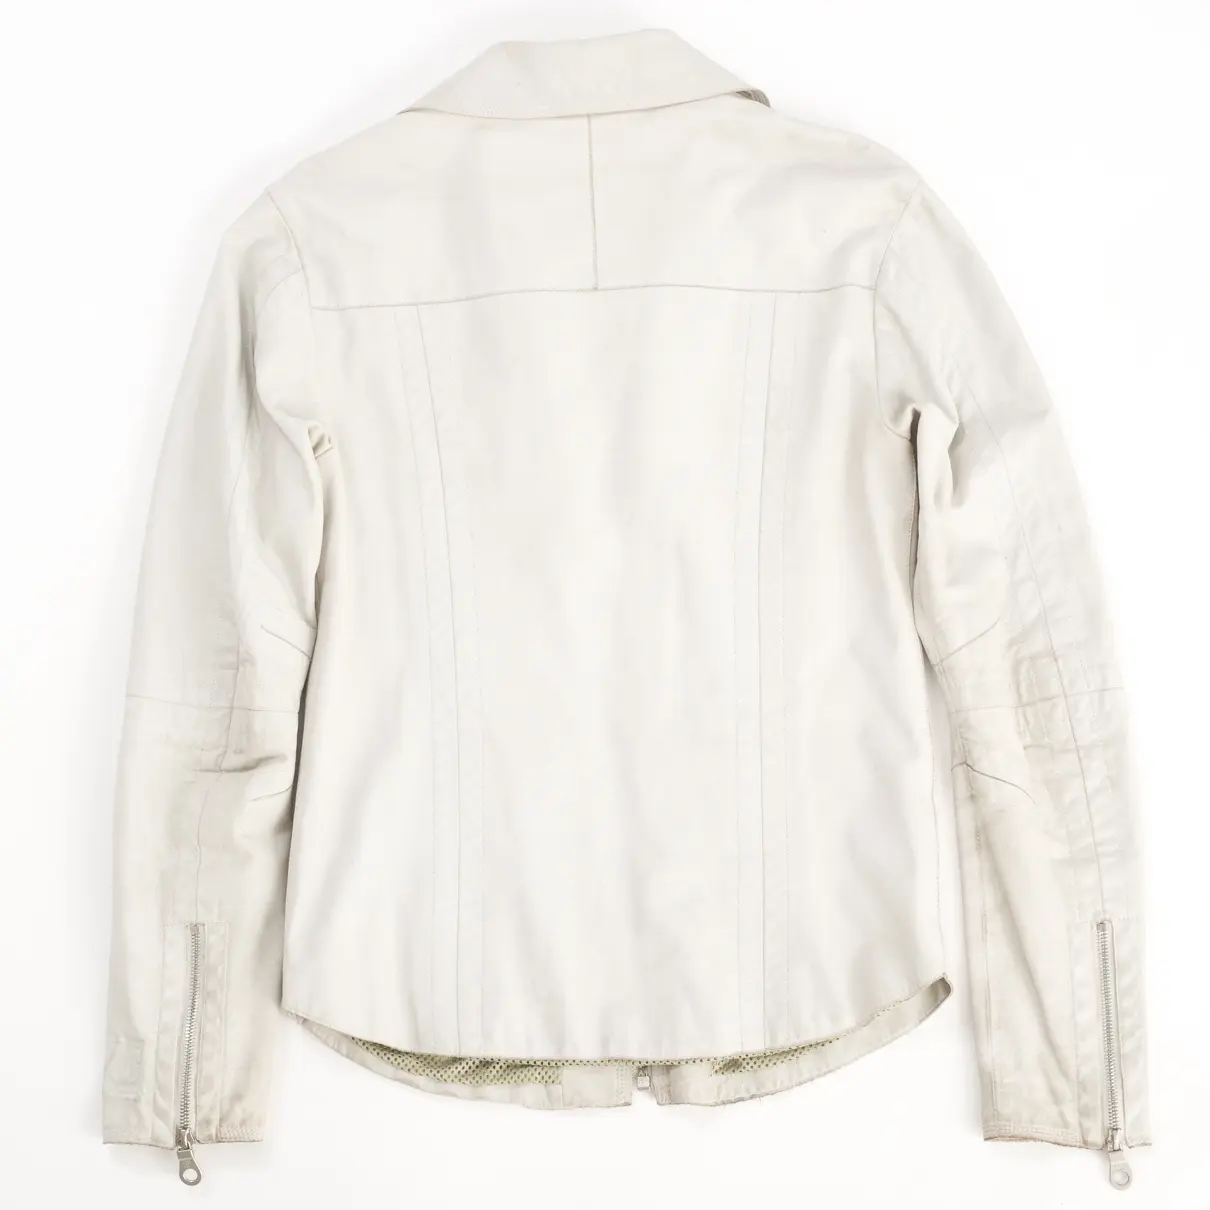 Chanel Beige Leather Biker jacket for sale - Vintage